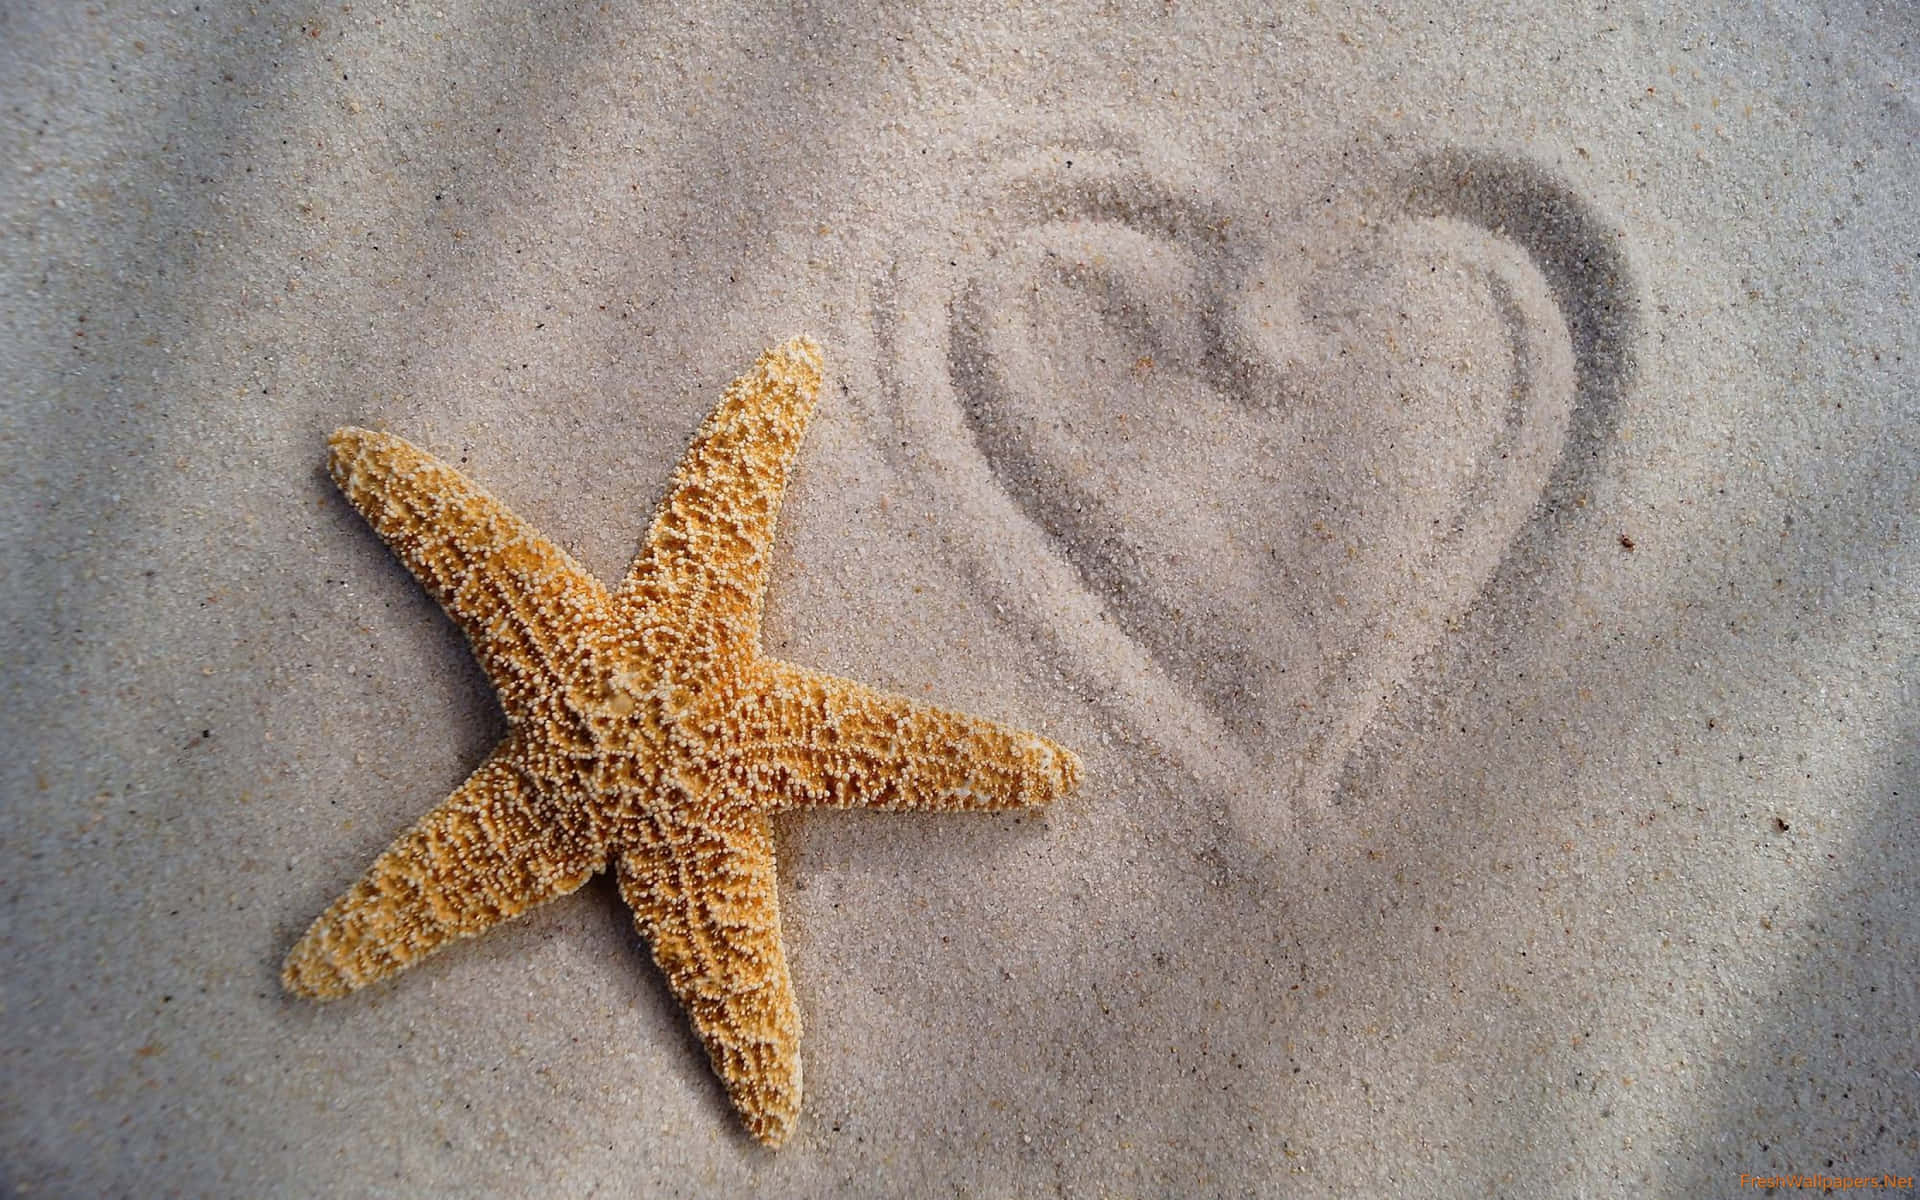 Starfish On The Beach